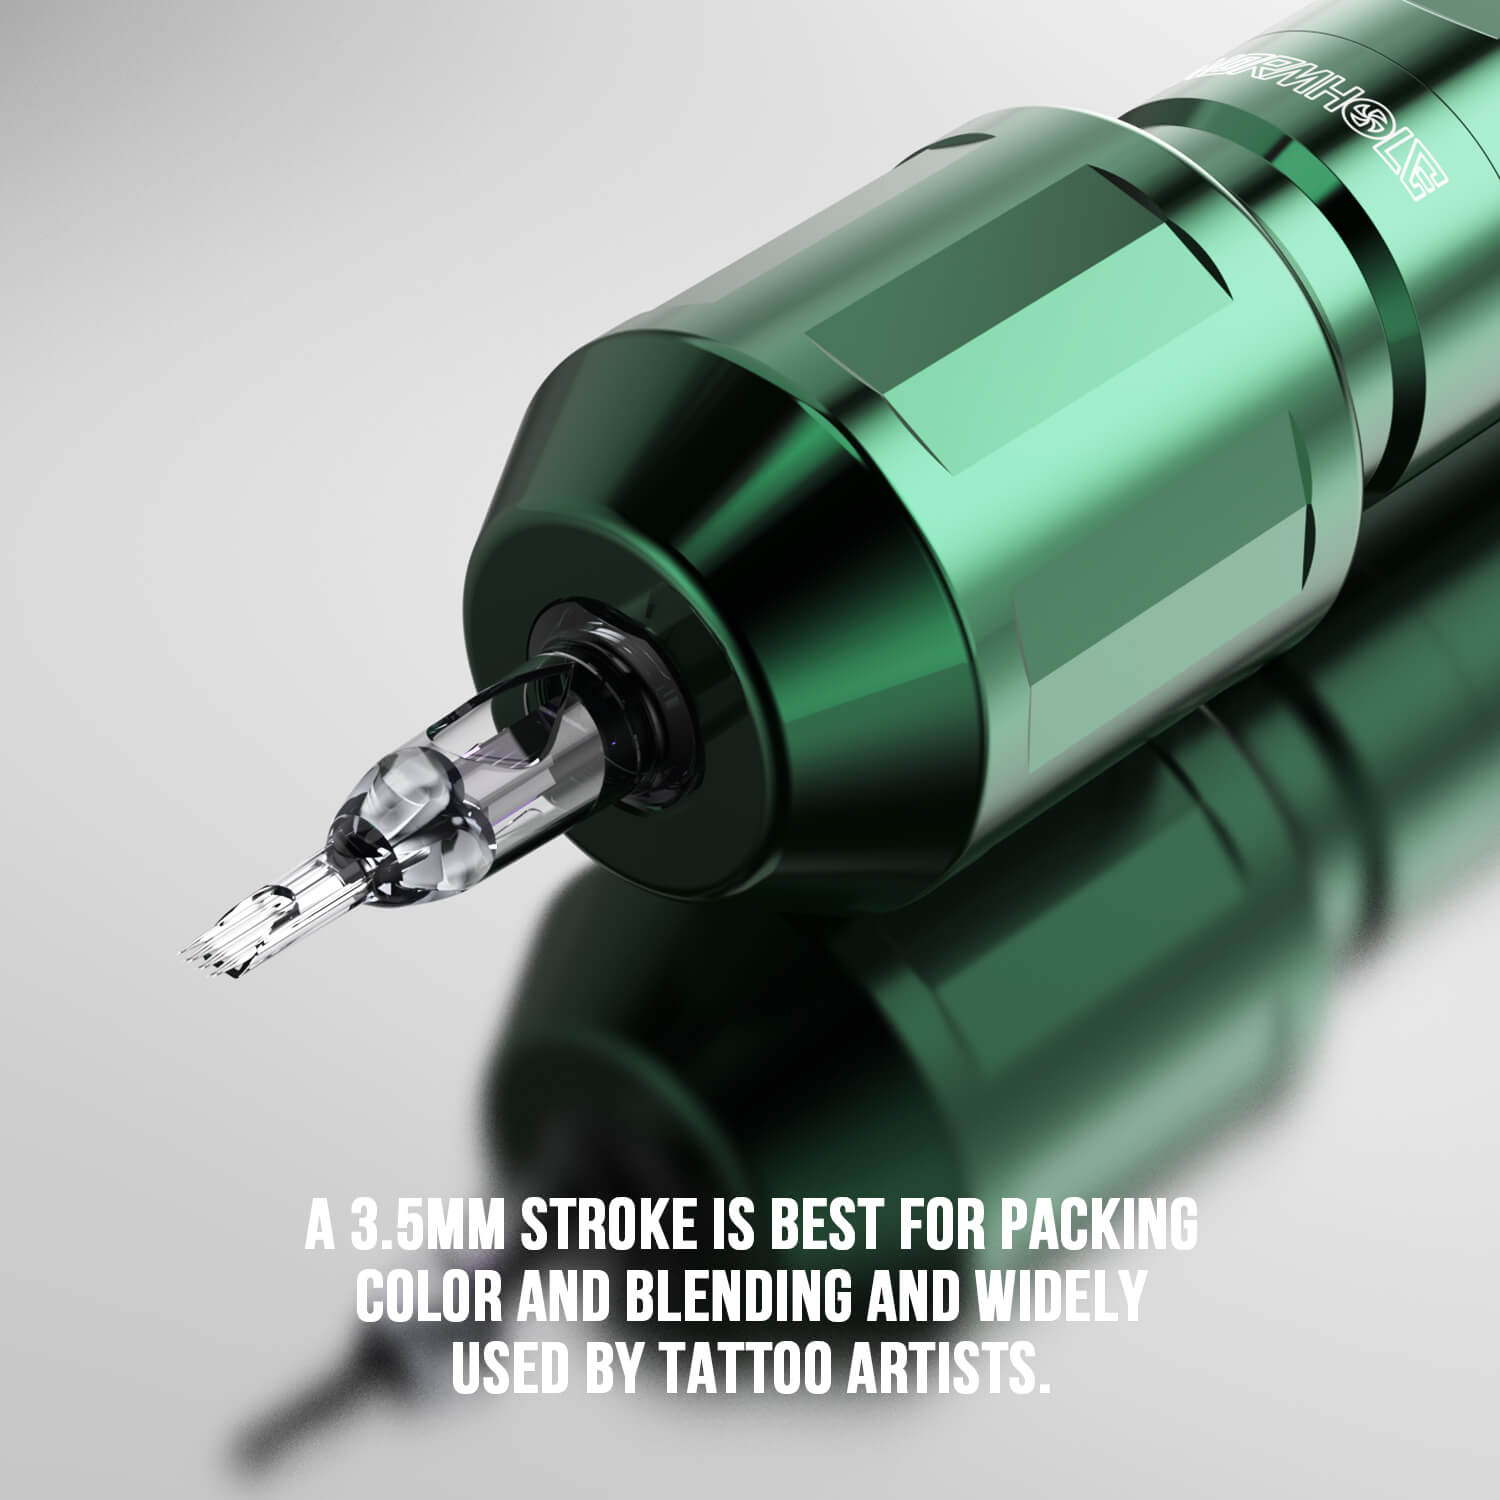 Macchinetta per tatuaggi con 2 impugnature per tatuaggi HP53